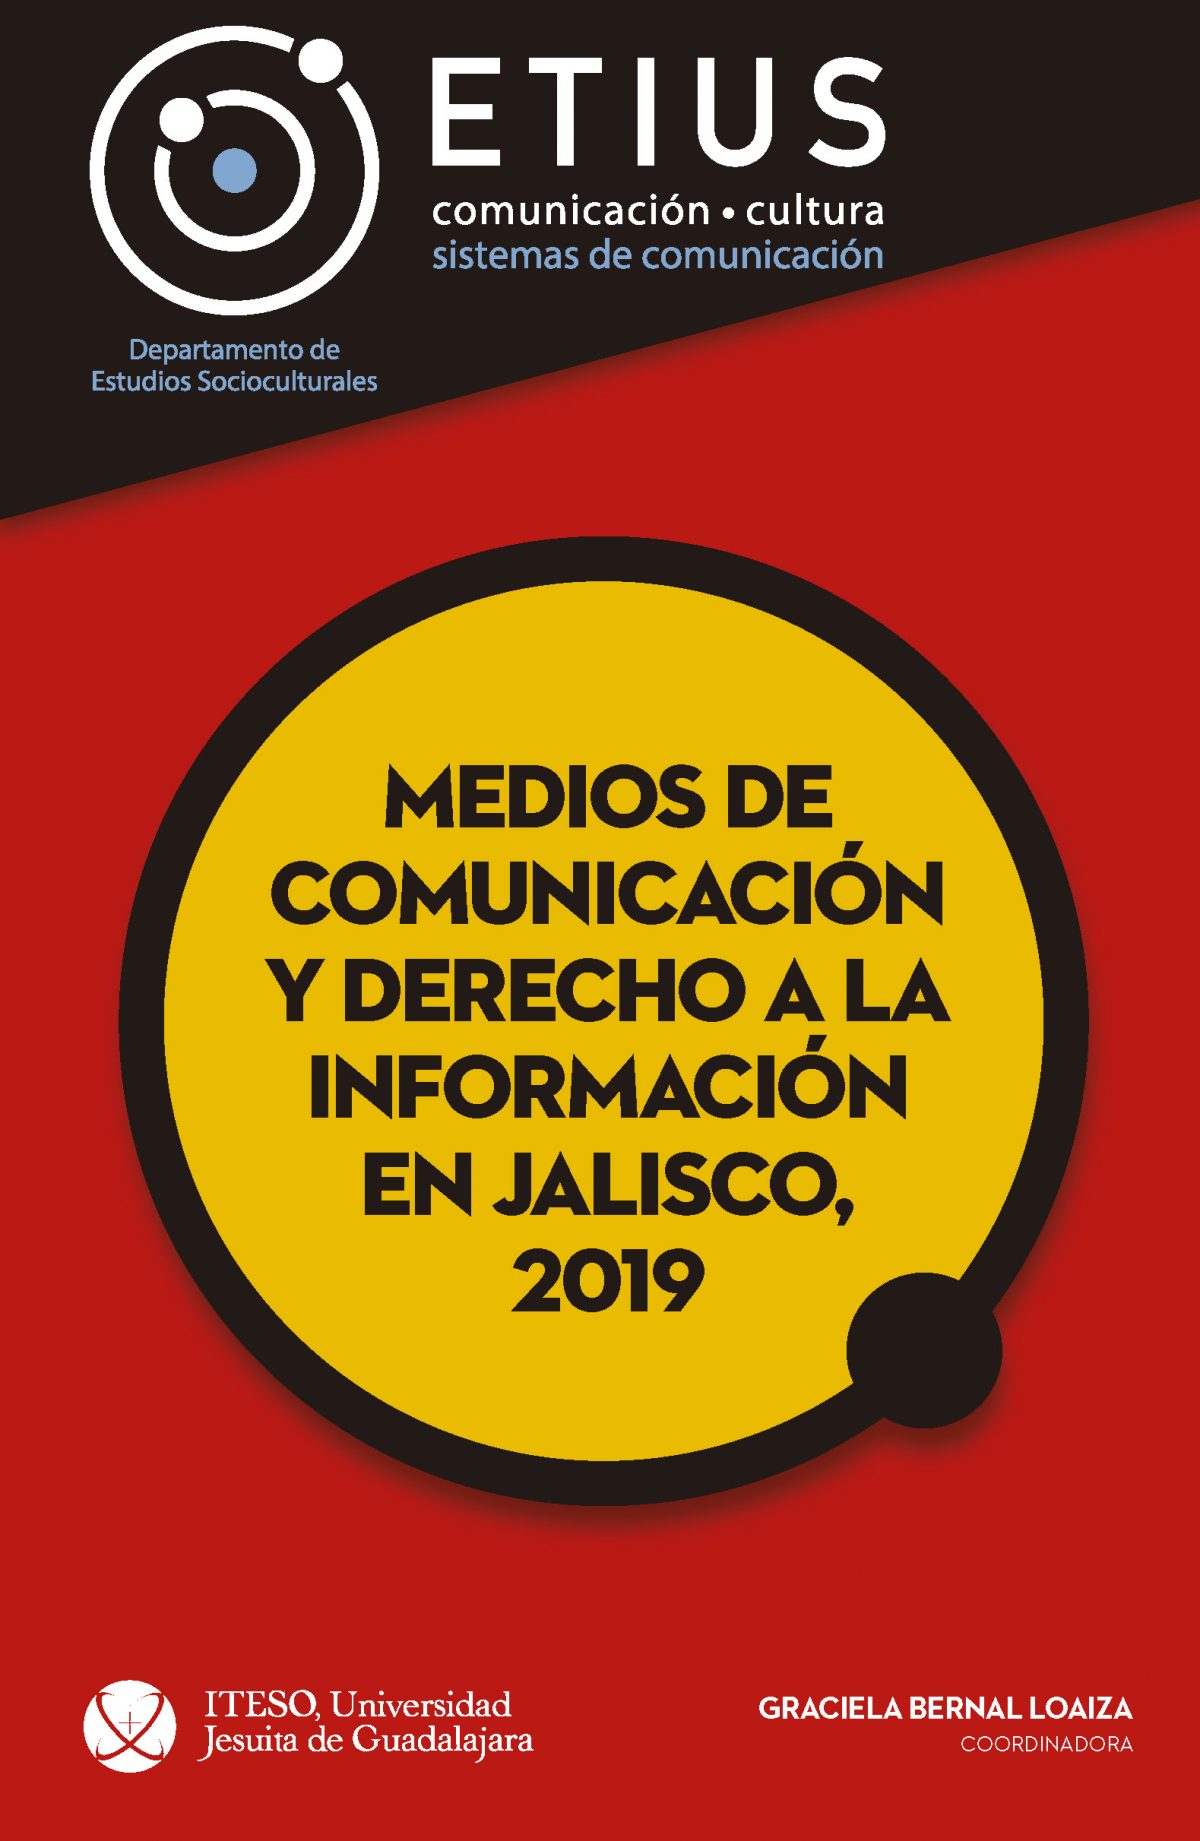 Medios de comunicación y derecho a la información en jalisco, 2019